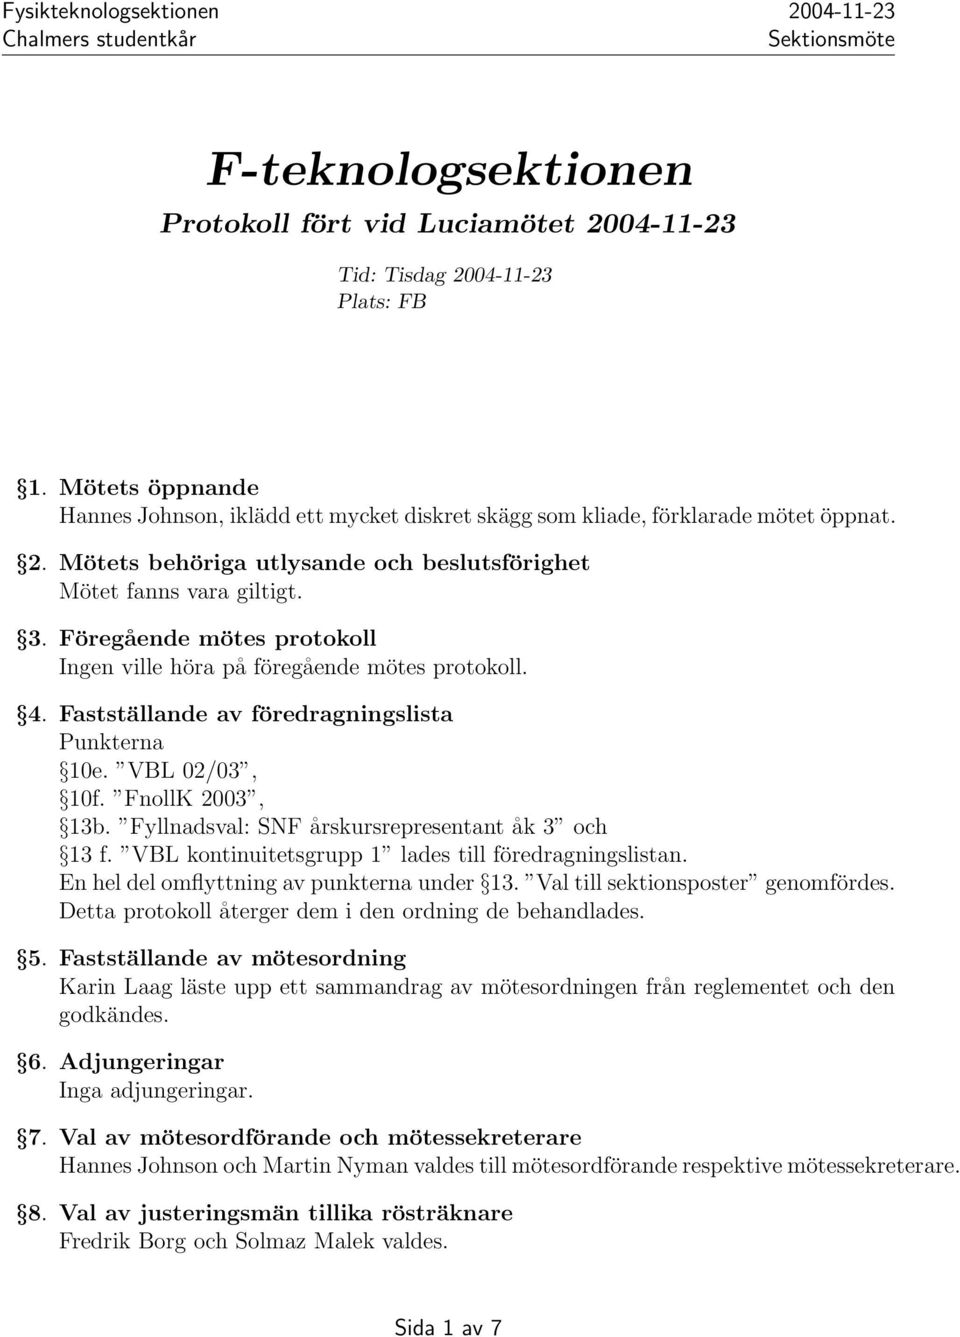 Fastställande av föredragningslista Punkterna 10e. VBL 02/03, 10f. FnollK 2003, 13b. Fyllnadsval: SNF årskursrepresentant åk 3 och 13 f. VBL kontinuitetsgrupp 1 lades till föredragningslistan.